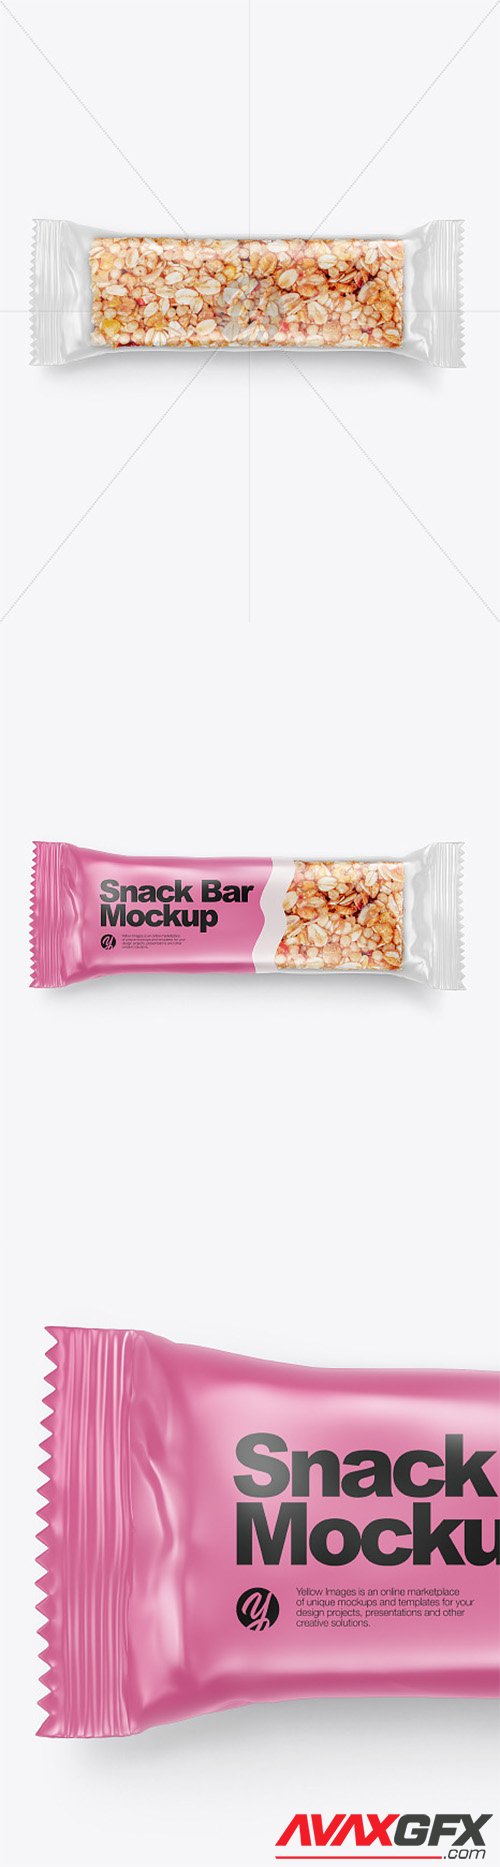 Muesli Snack Bar Mockup 67187